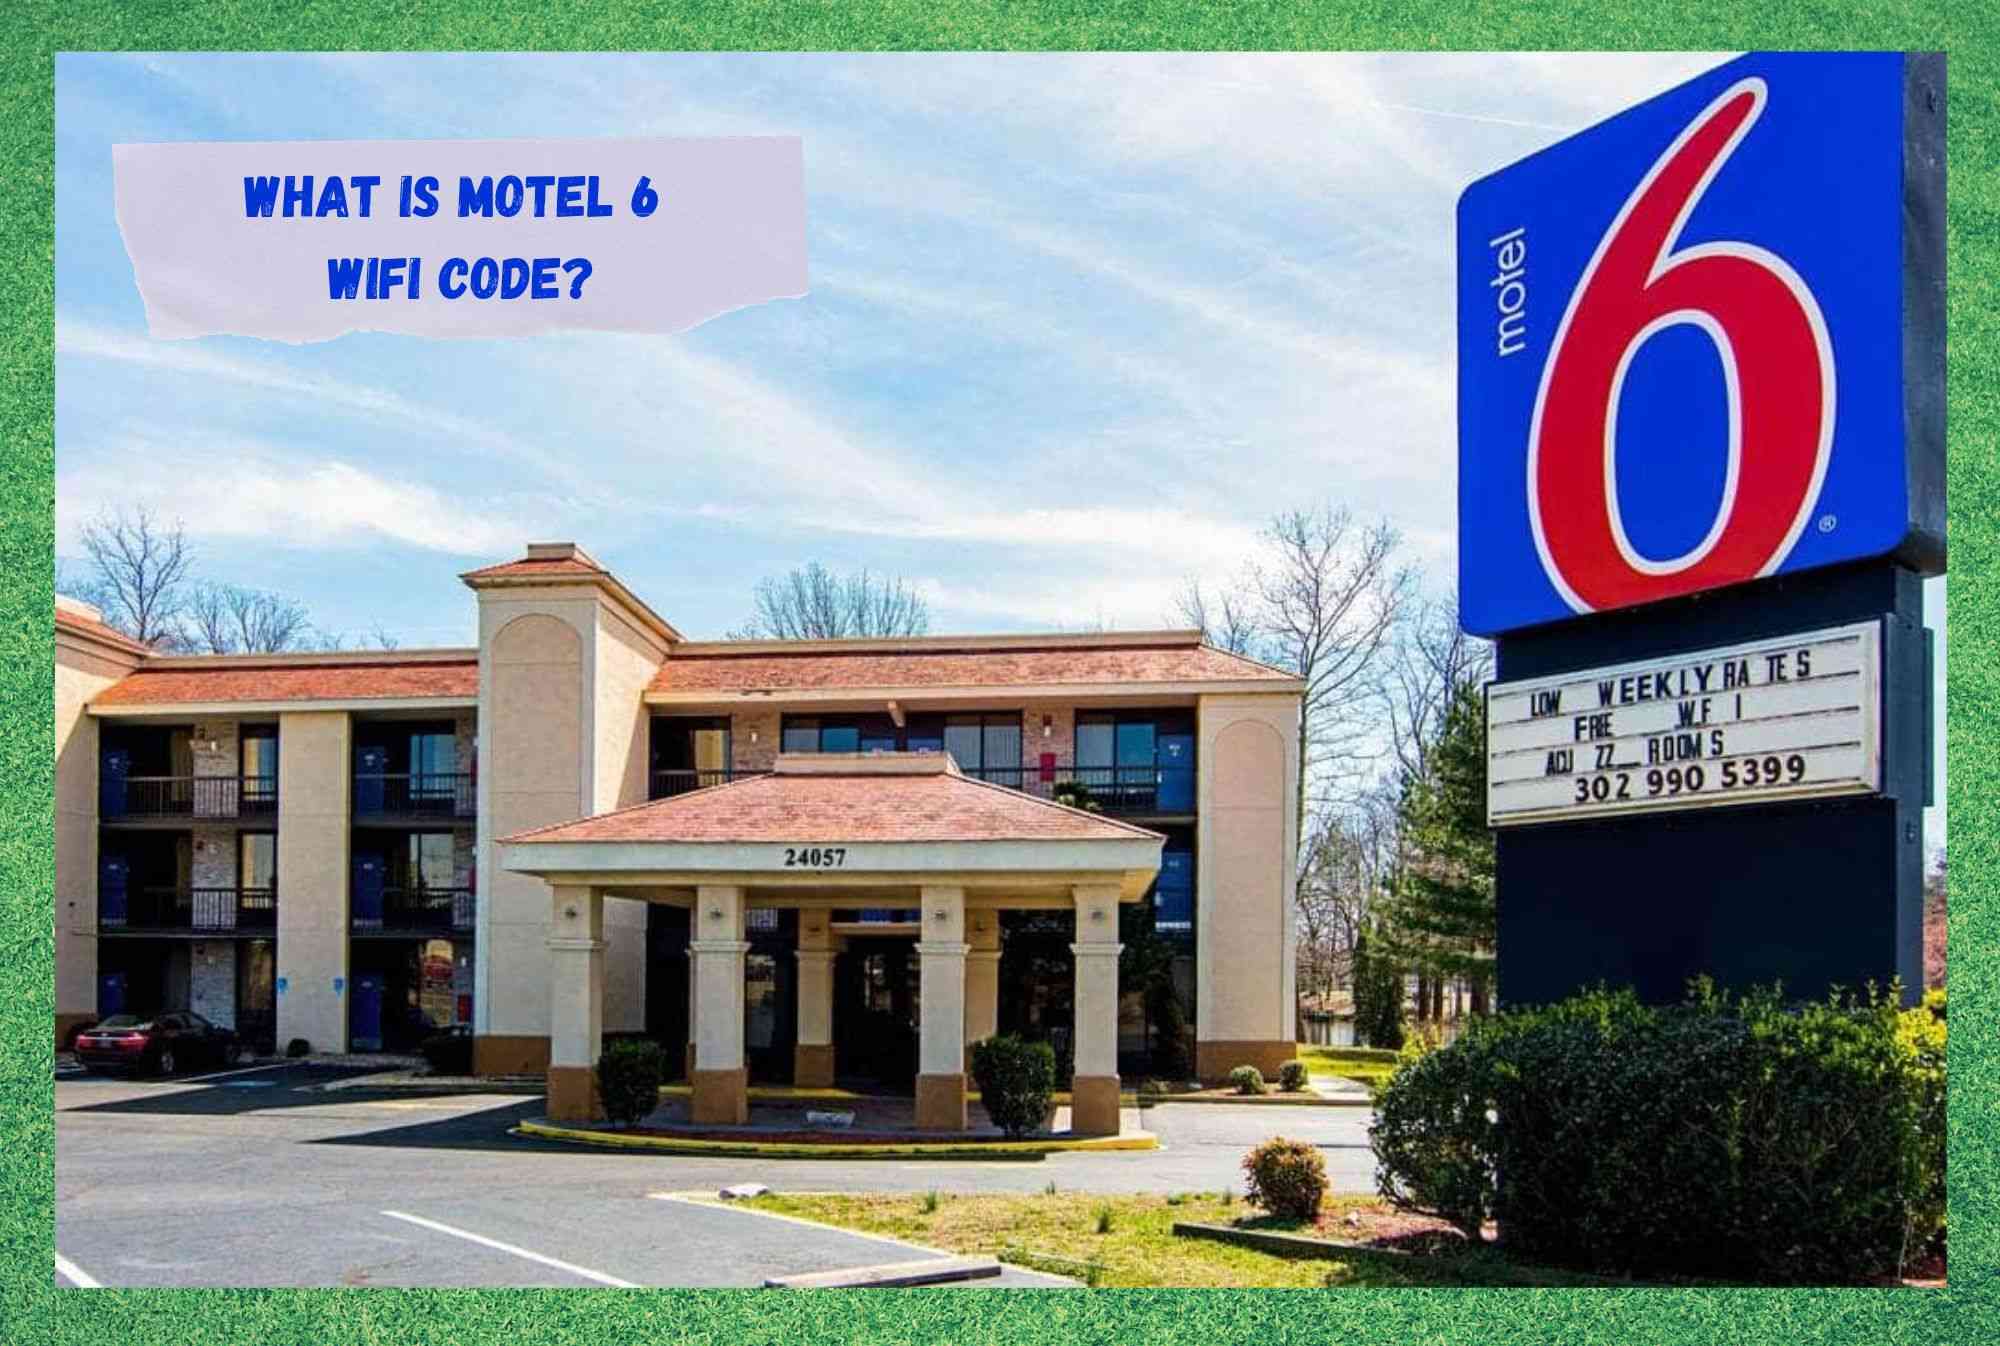 Motel 6 WiFi Code